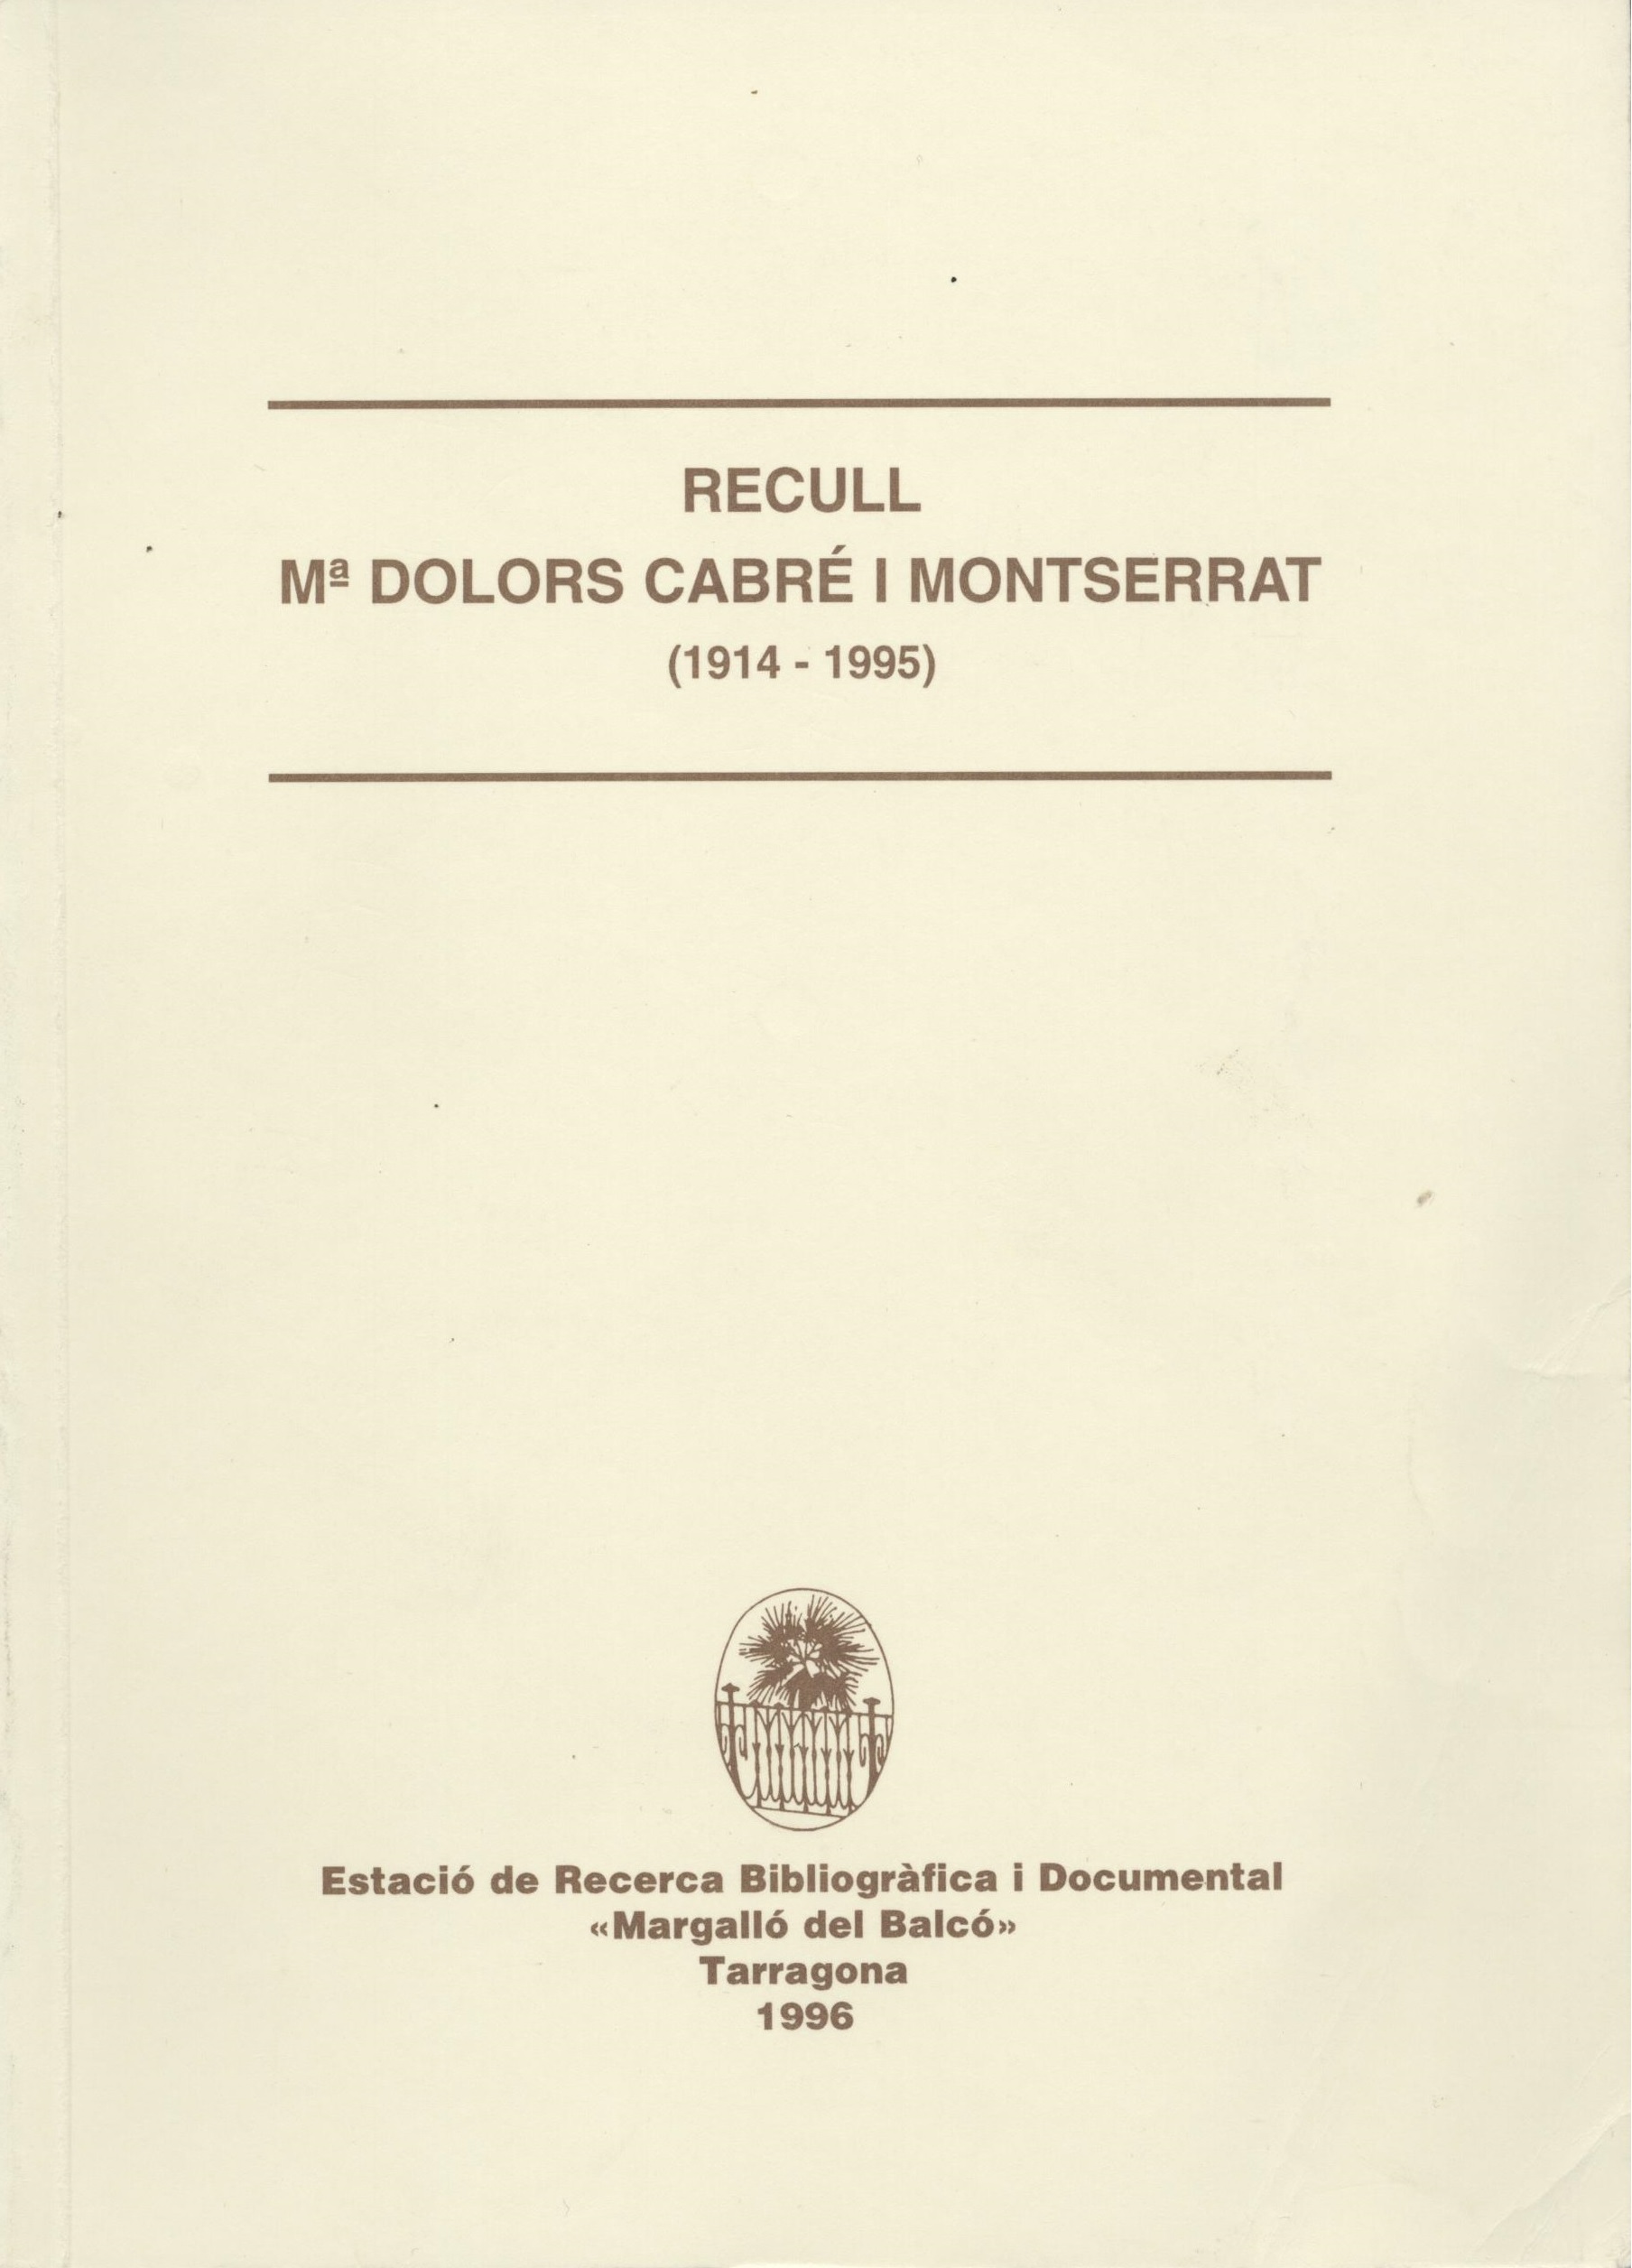 Imagen de portada del libro Recull Mª Dolors Cabré i Monteserrat (1914-1995)